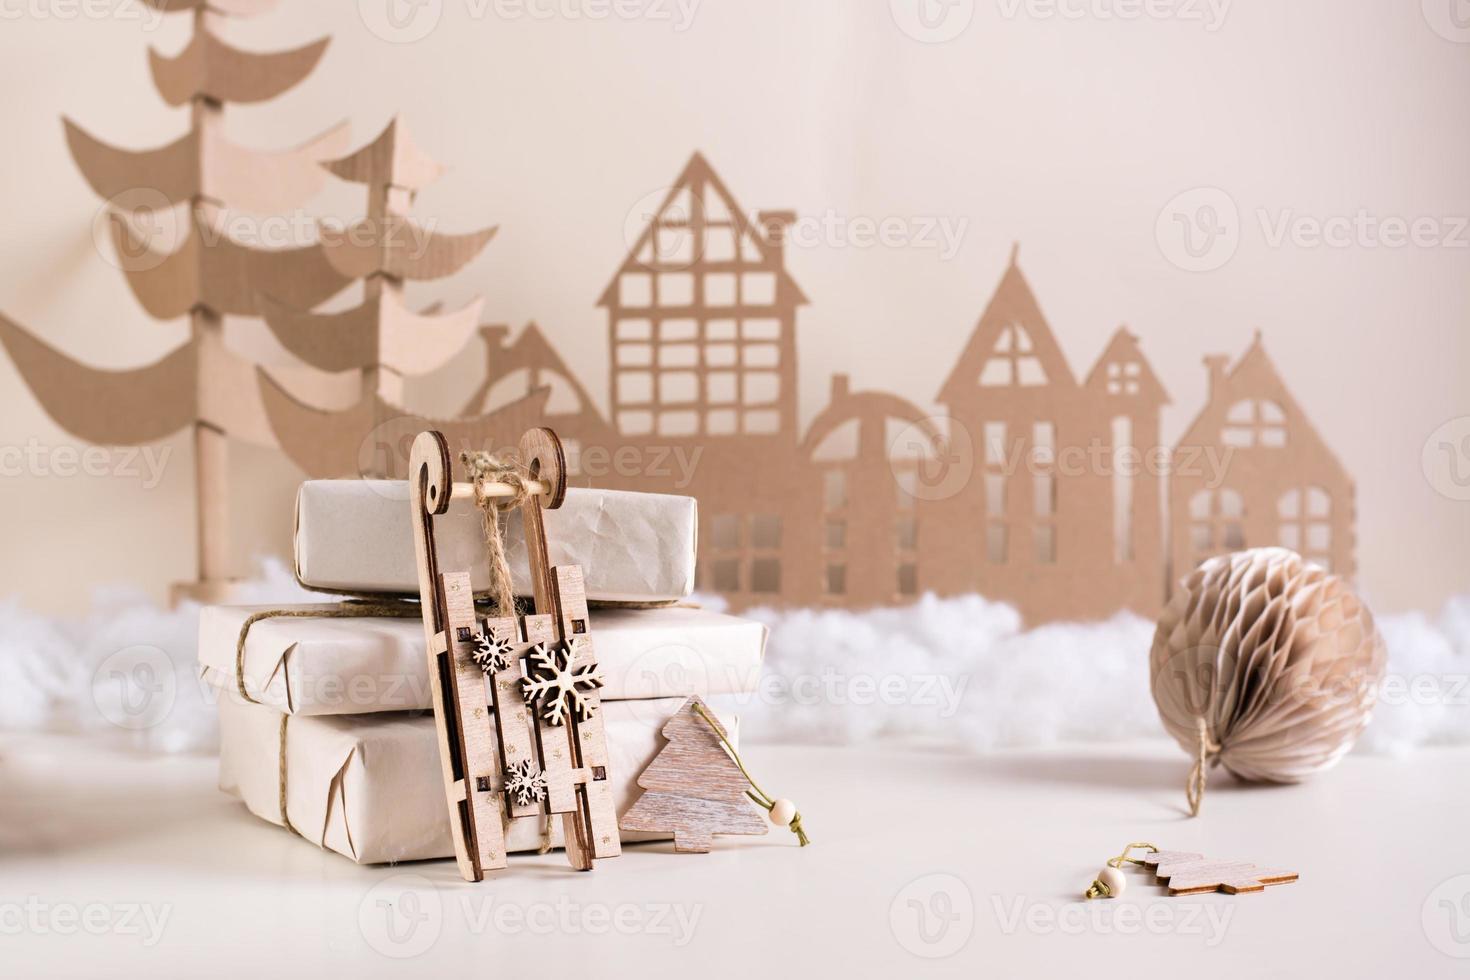 diy weihnachtliche wohnkultur - holzschlitten in der nähe von geschenkstapeln, pappebaum und haus. handgefertigt foto